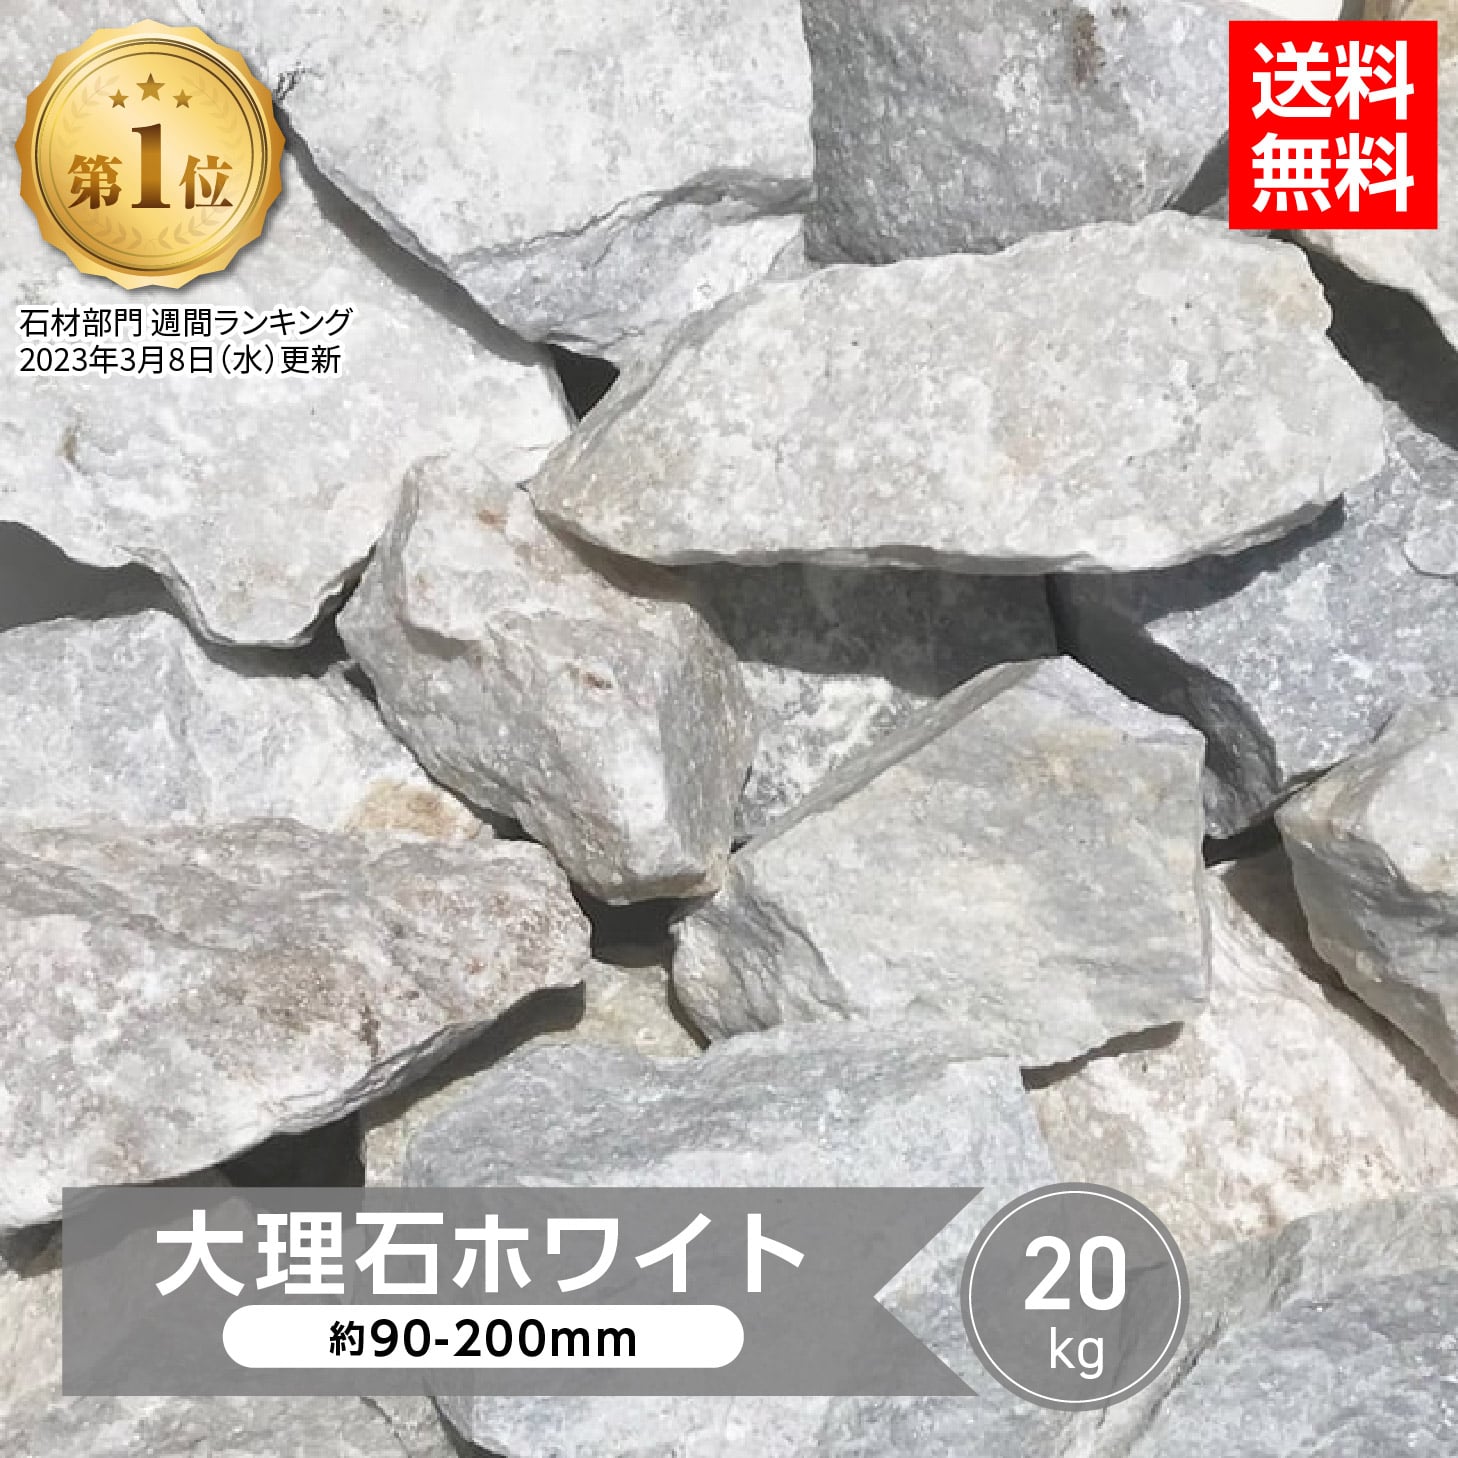 庭石 白 ロックガーデン 庭 石 割栗石 岩 ホワイトロック 大 20kg 販売 大理石 ホワイト ロックガーデンの石 石材 お…